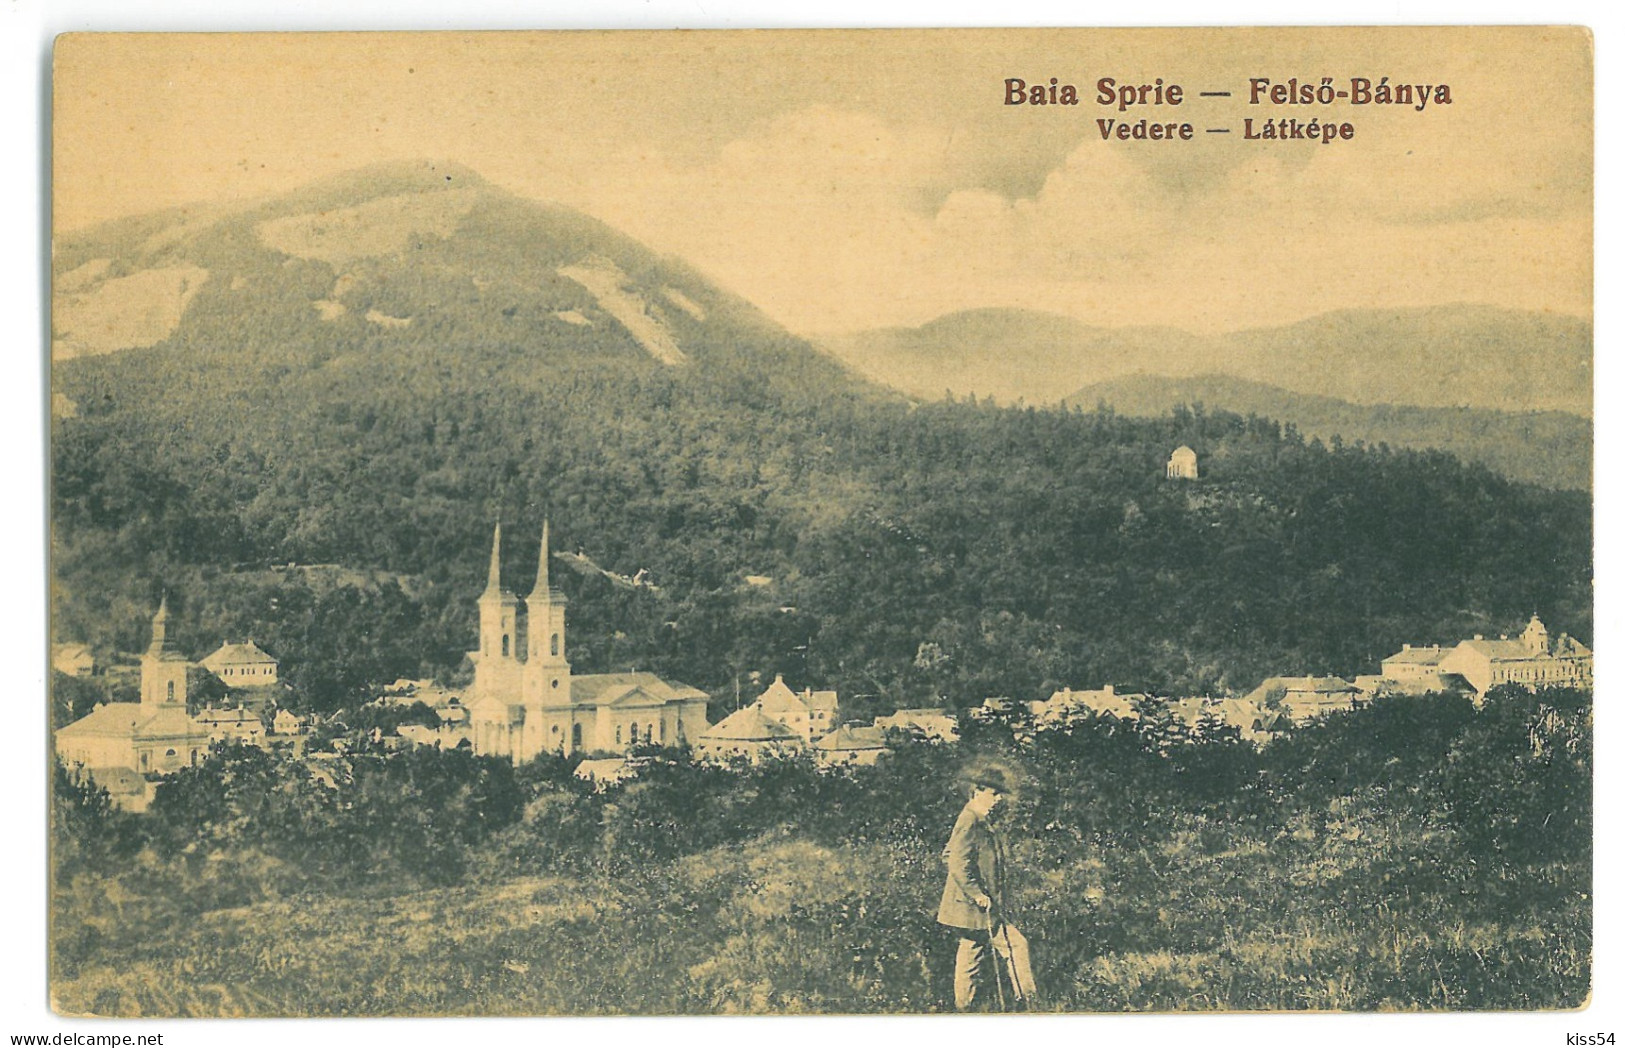 RO 45 - 24314 BAIA SPRIE, Maramures, Panorama, Romania - Old Postcard - Unused - Romania